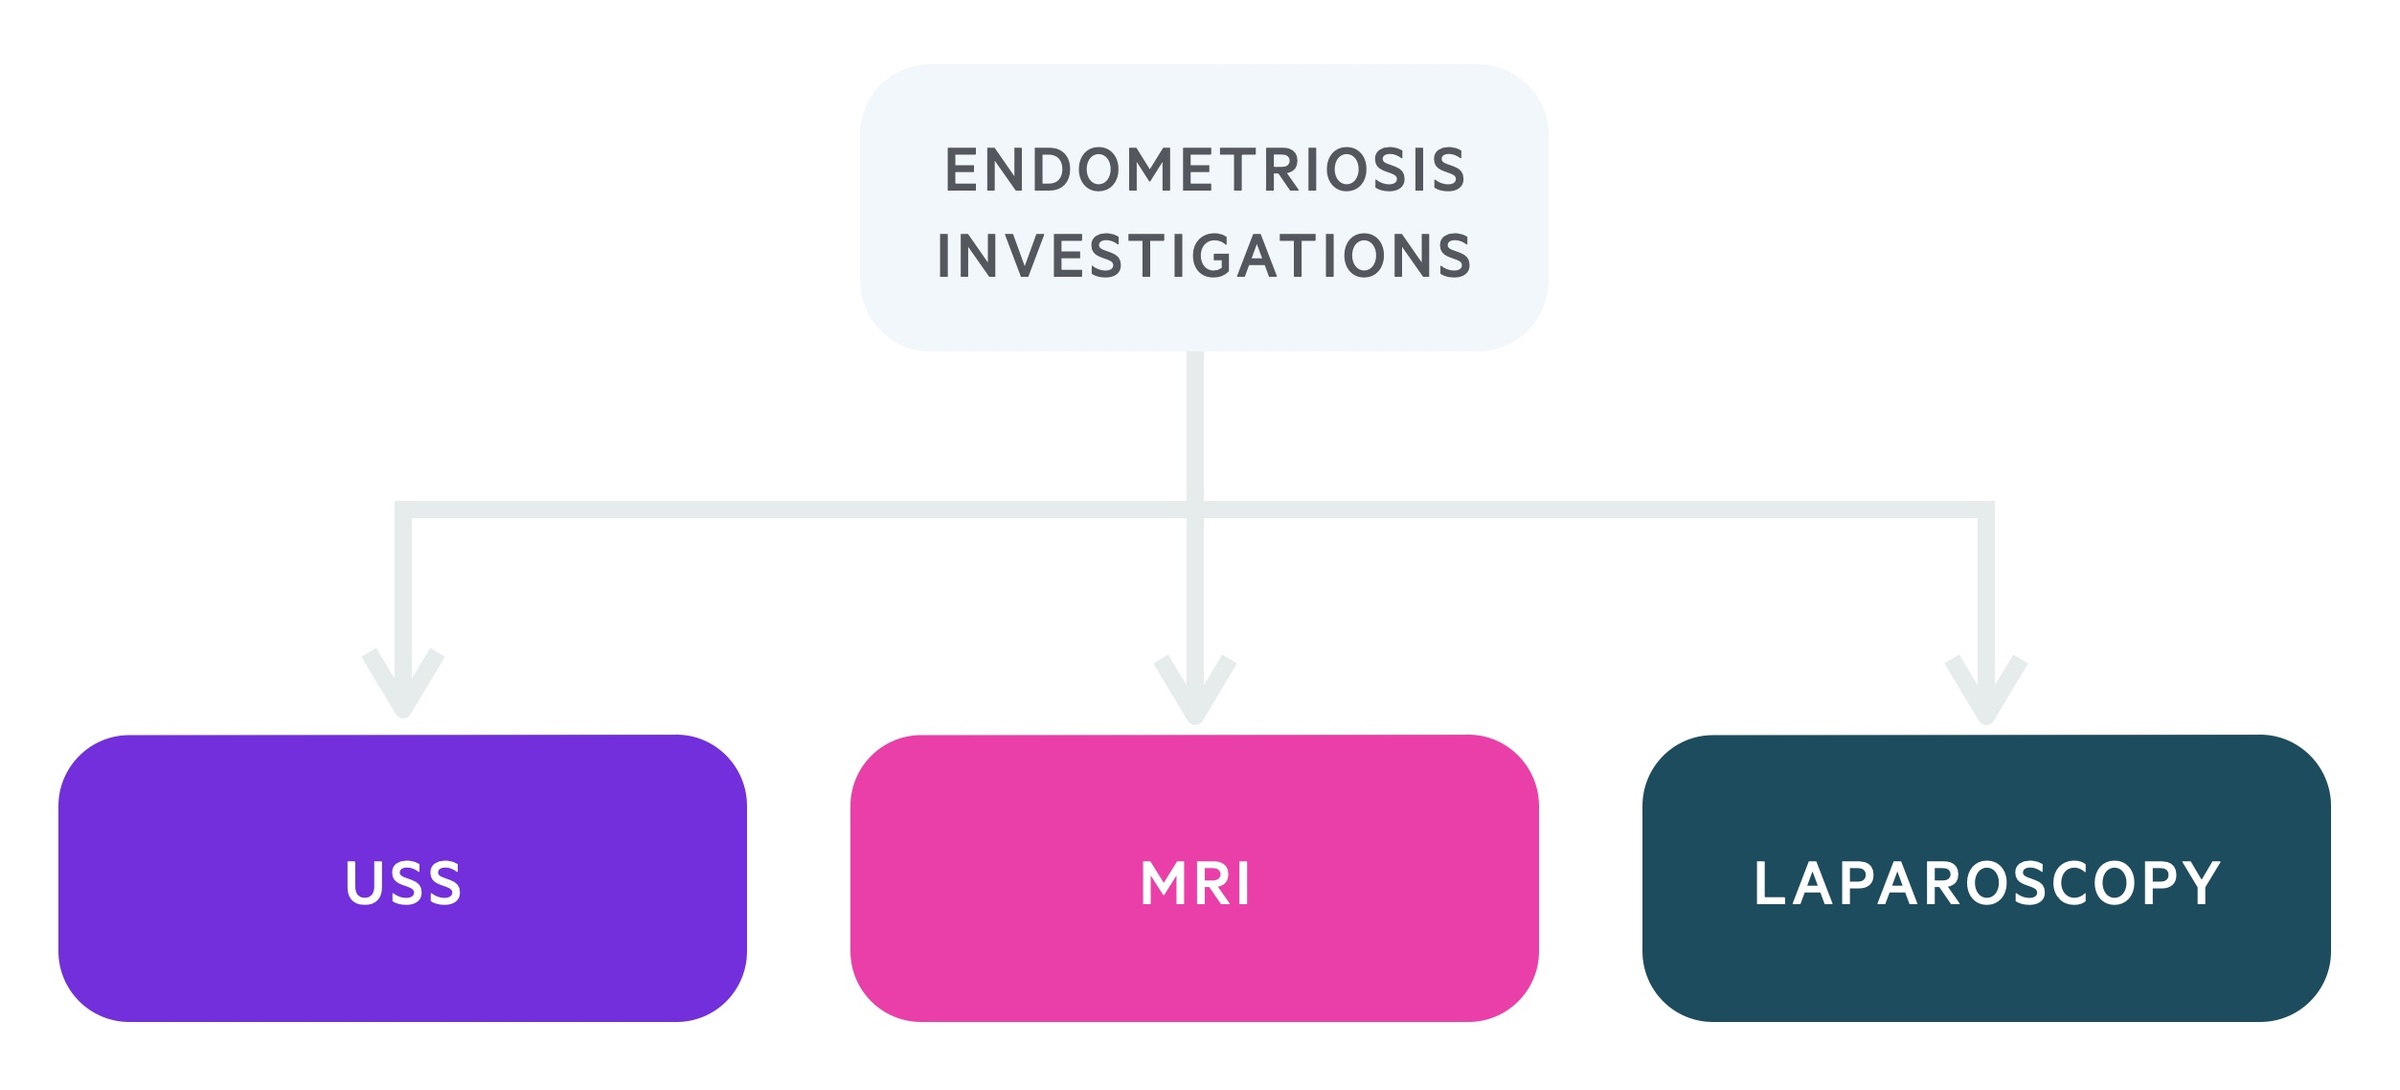 Endometriosis investigations